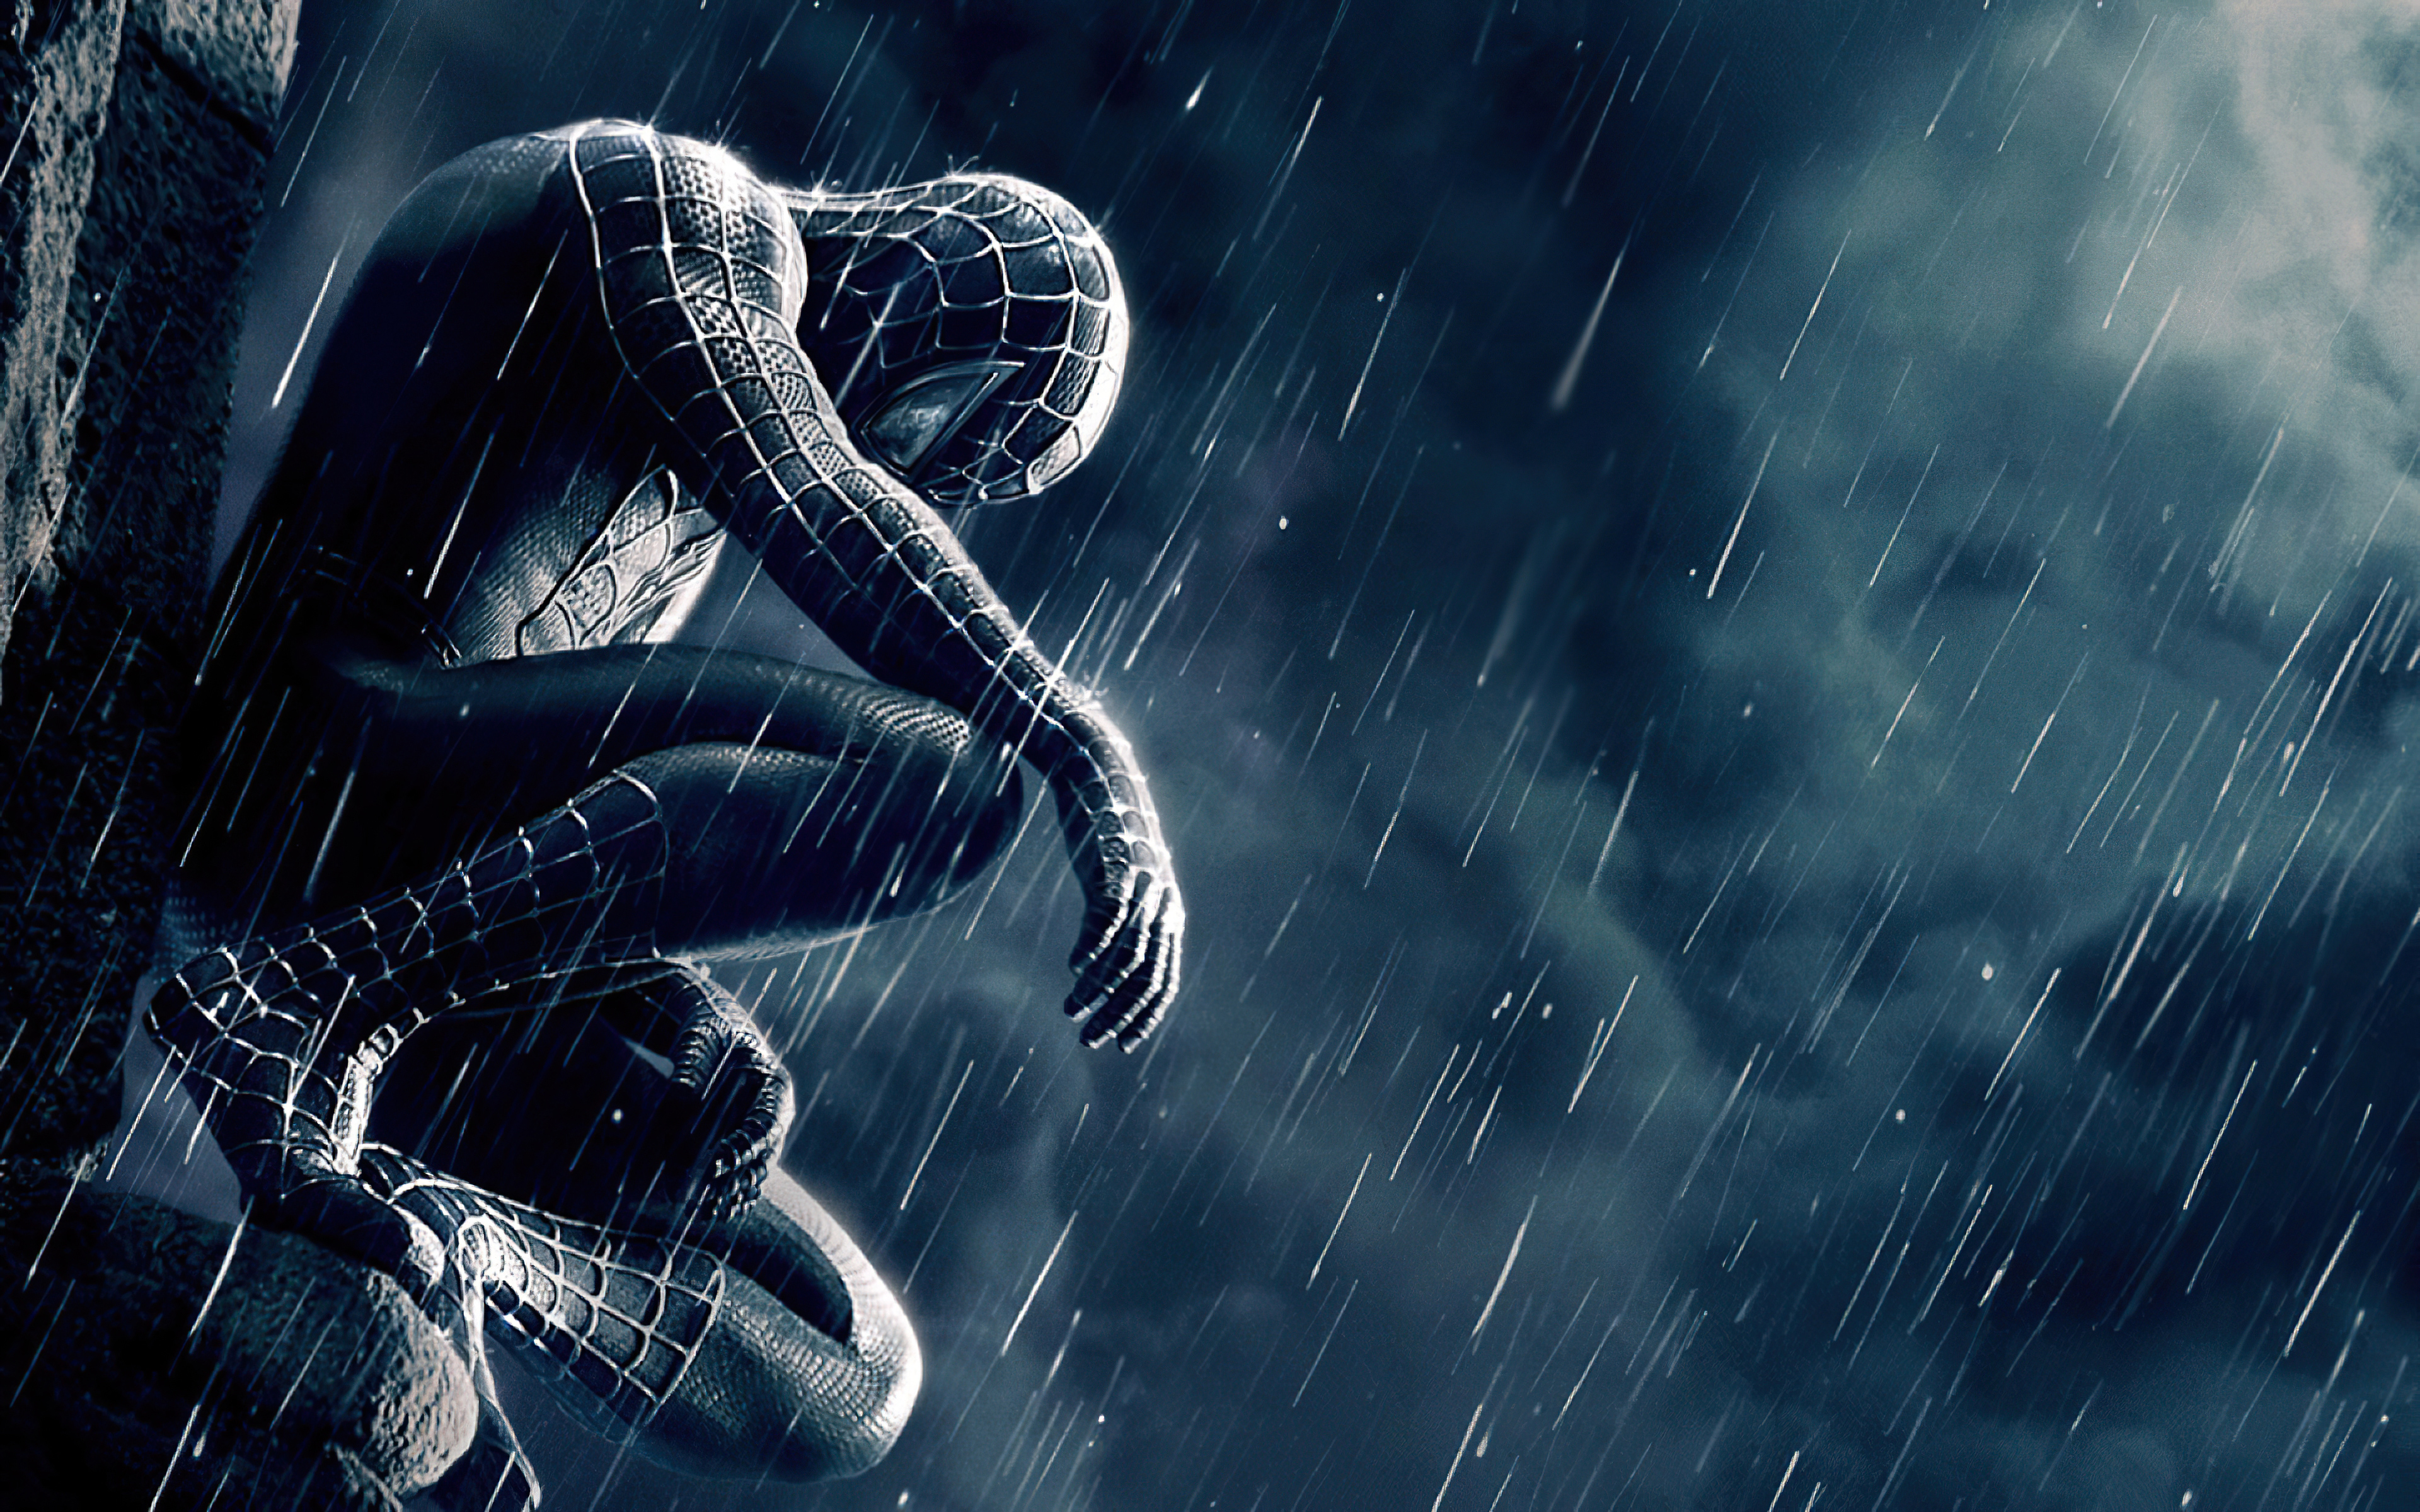 Black Spider Man 4k, HD Superheroes, 4k Wallpapers, Images, Backgrounds